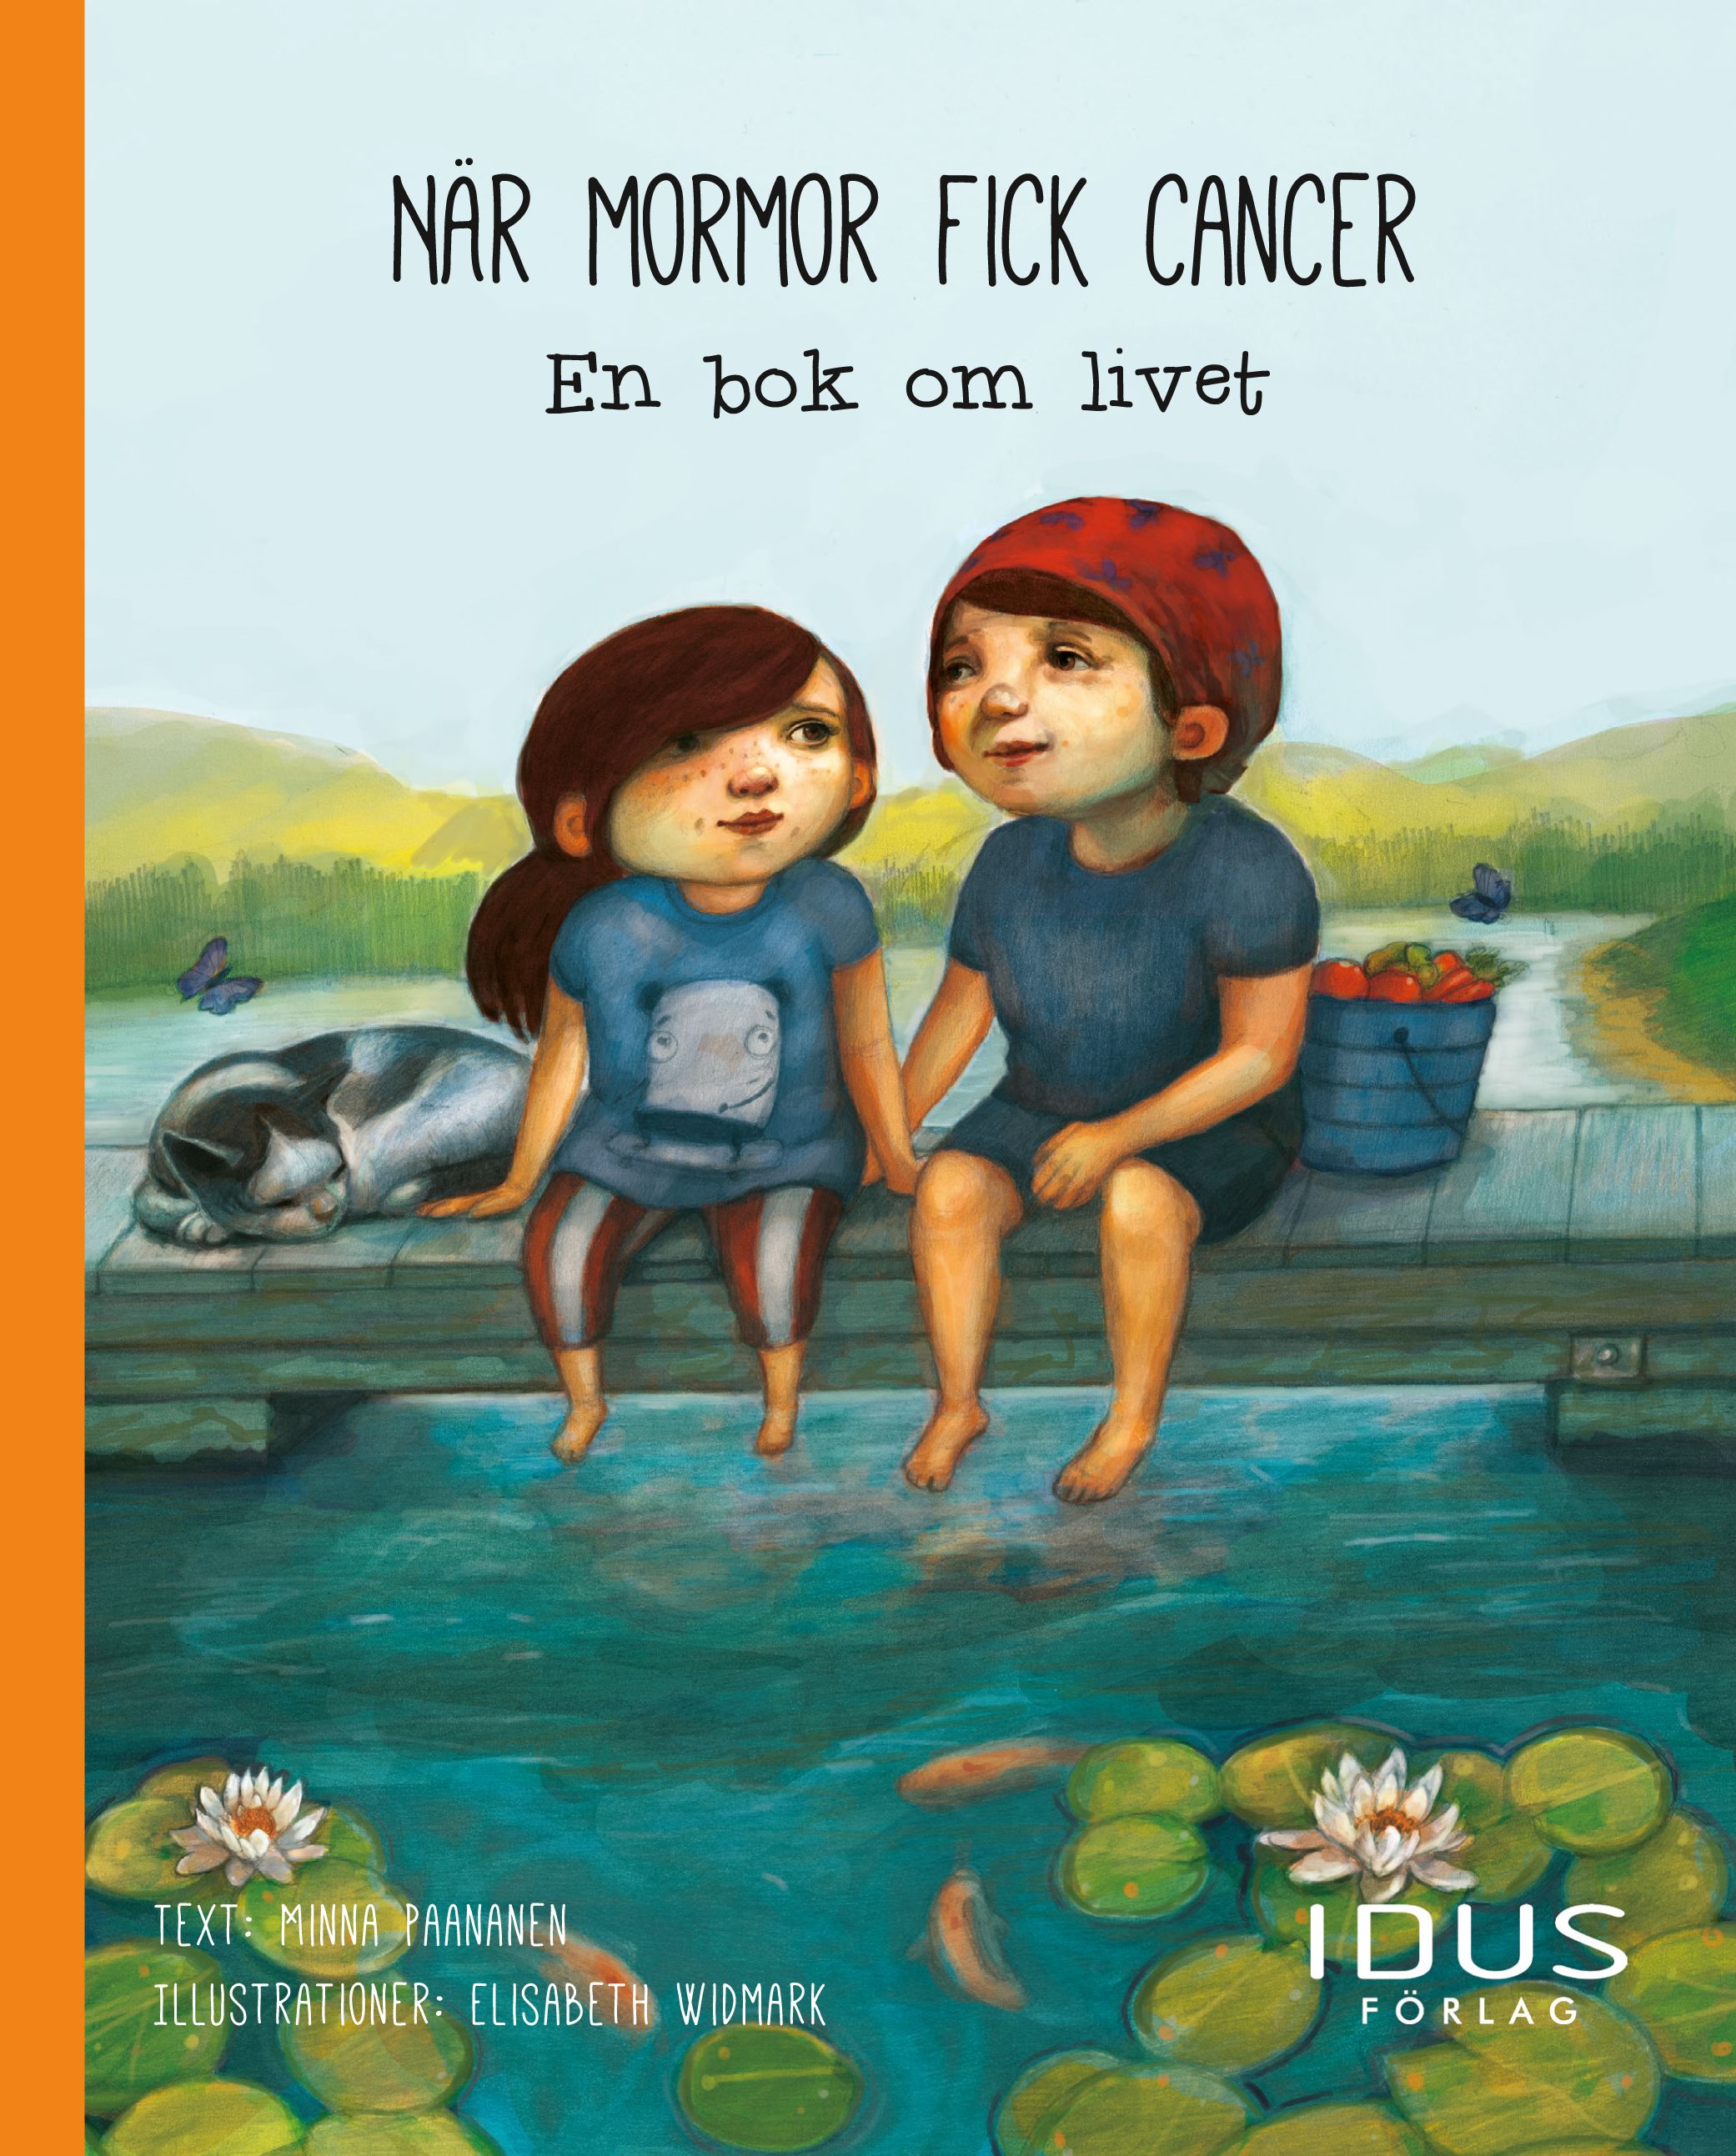 När mormor fick cancer : en bok om livet, e-bok av Minna Paananen